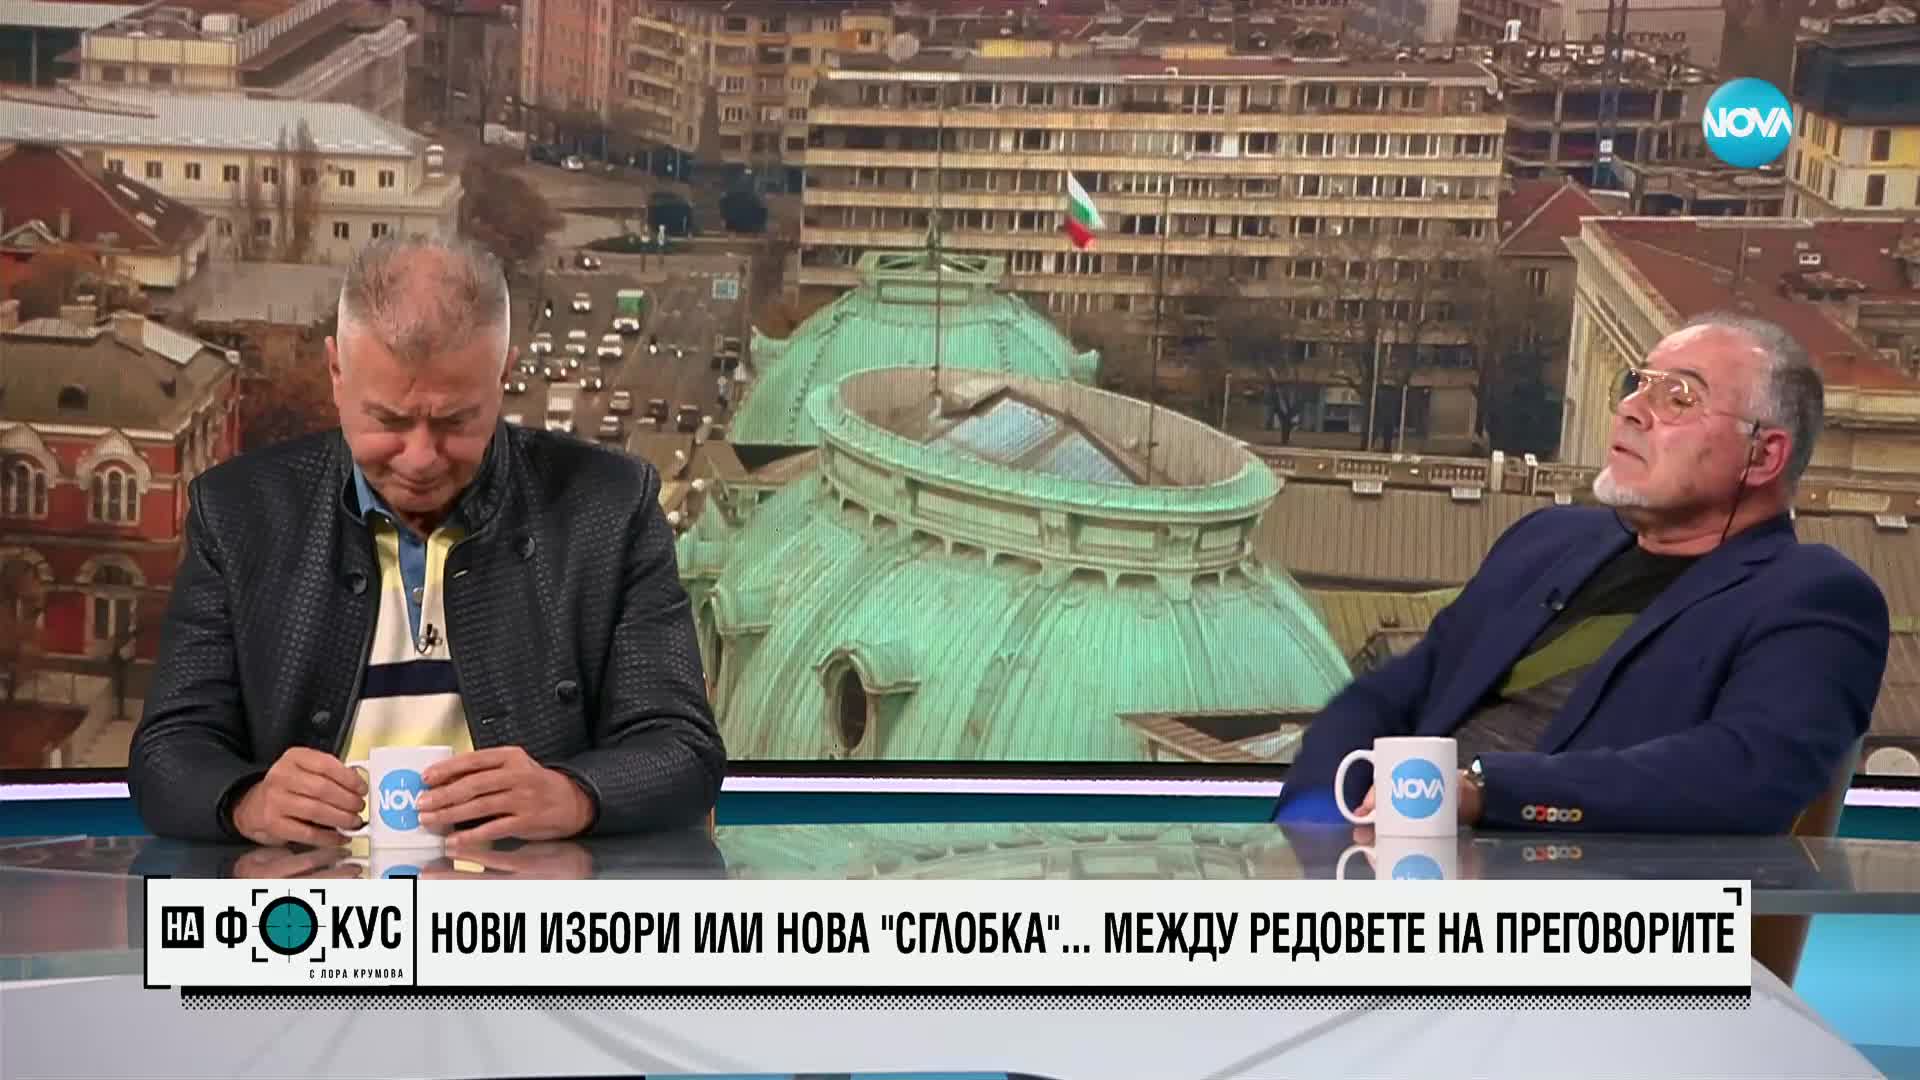 Красимир Дачев и Ивайло Караньотов за ротацията, мястото на България в ЕС и войната в Украйна